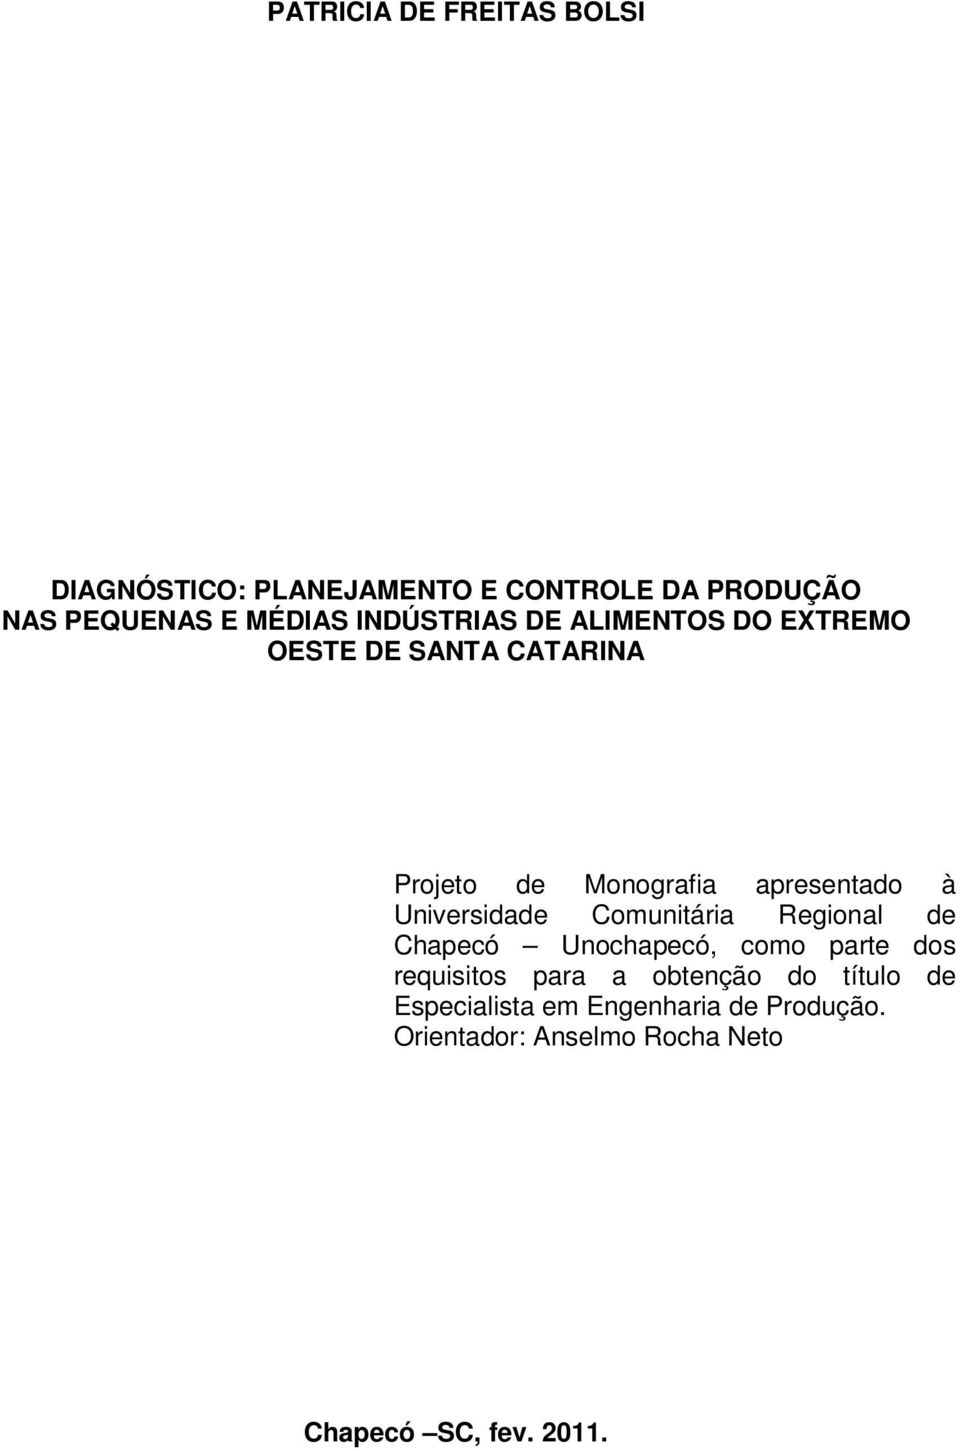 Universidade Comunitária Regional de Chapecó Unochapecó, como parte dos requisitos para a obtenção